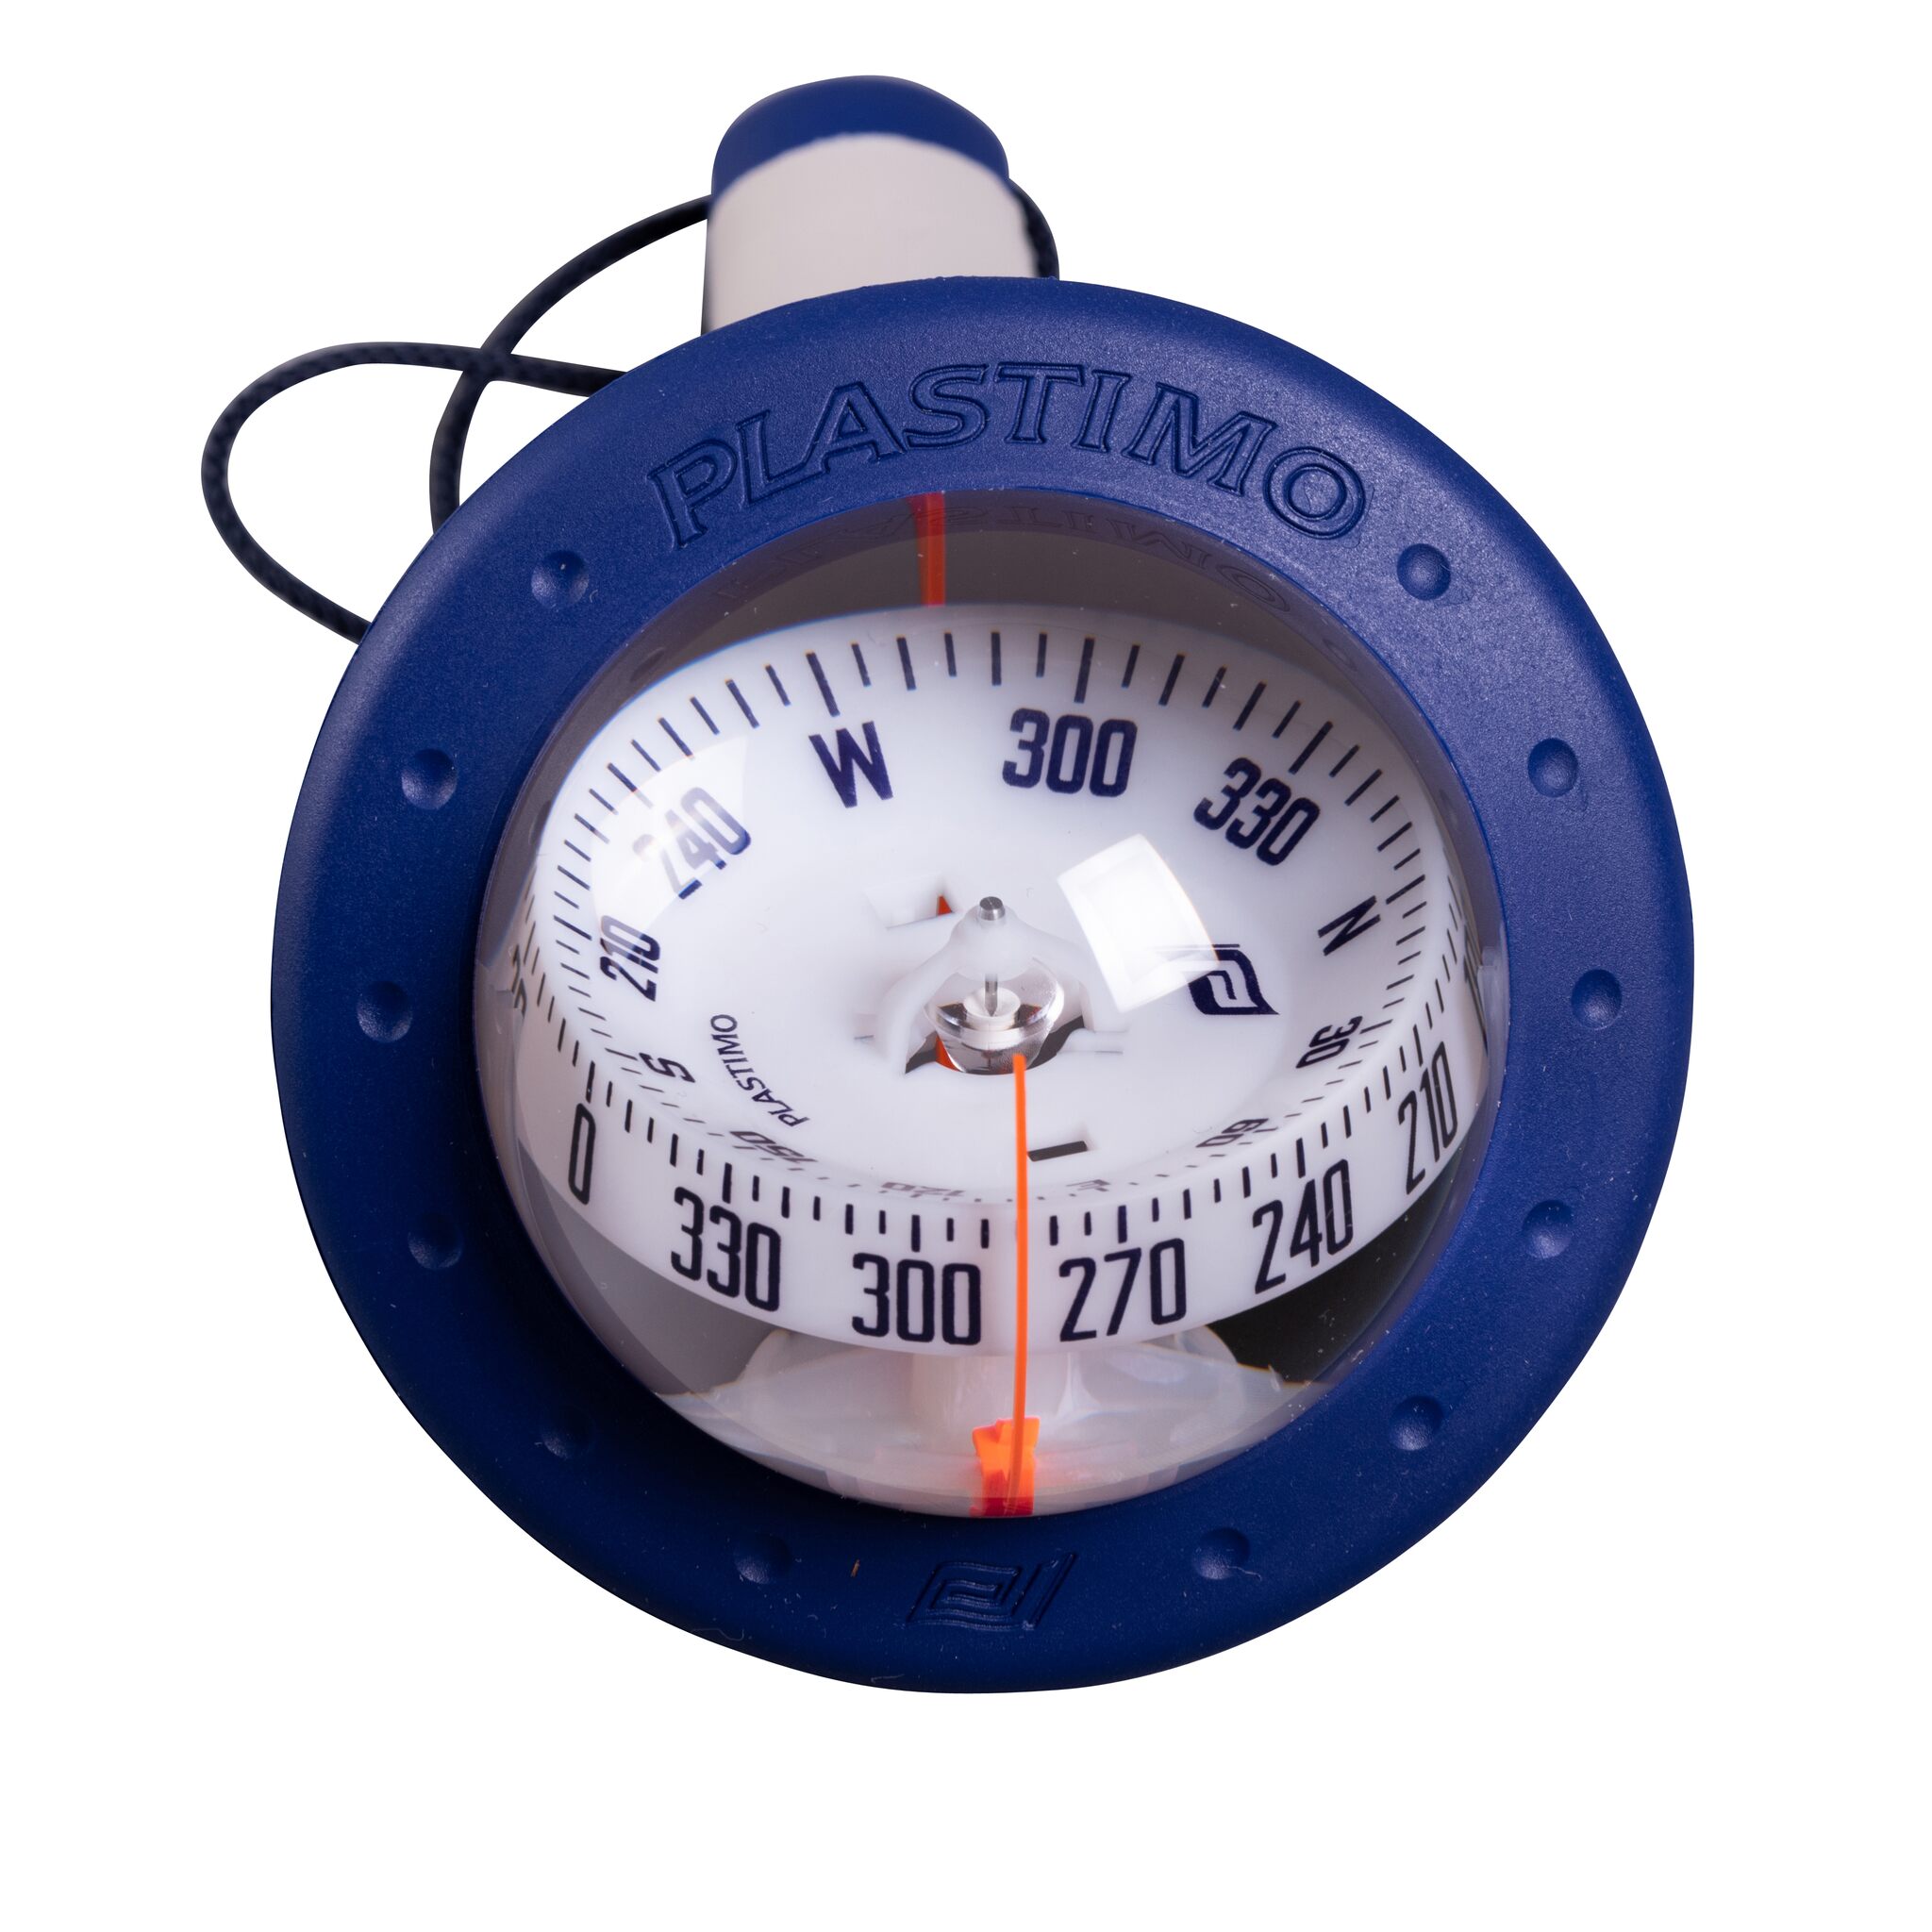 Kompass IRIS 100 in blau mit Beleuchtung